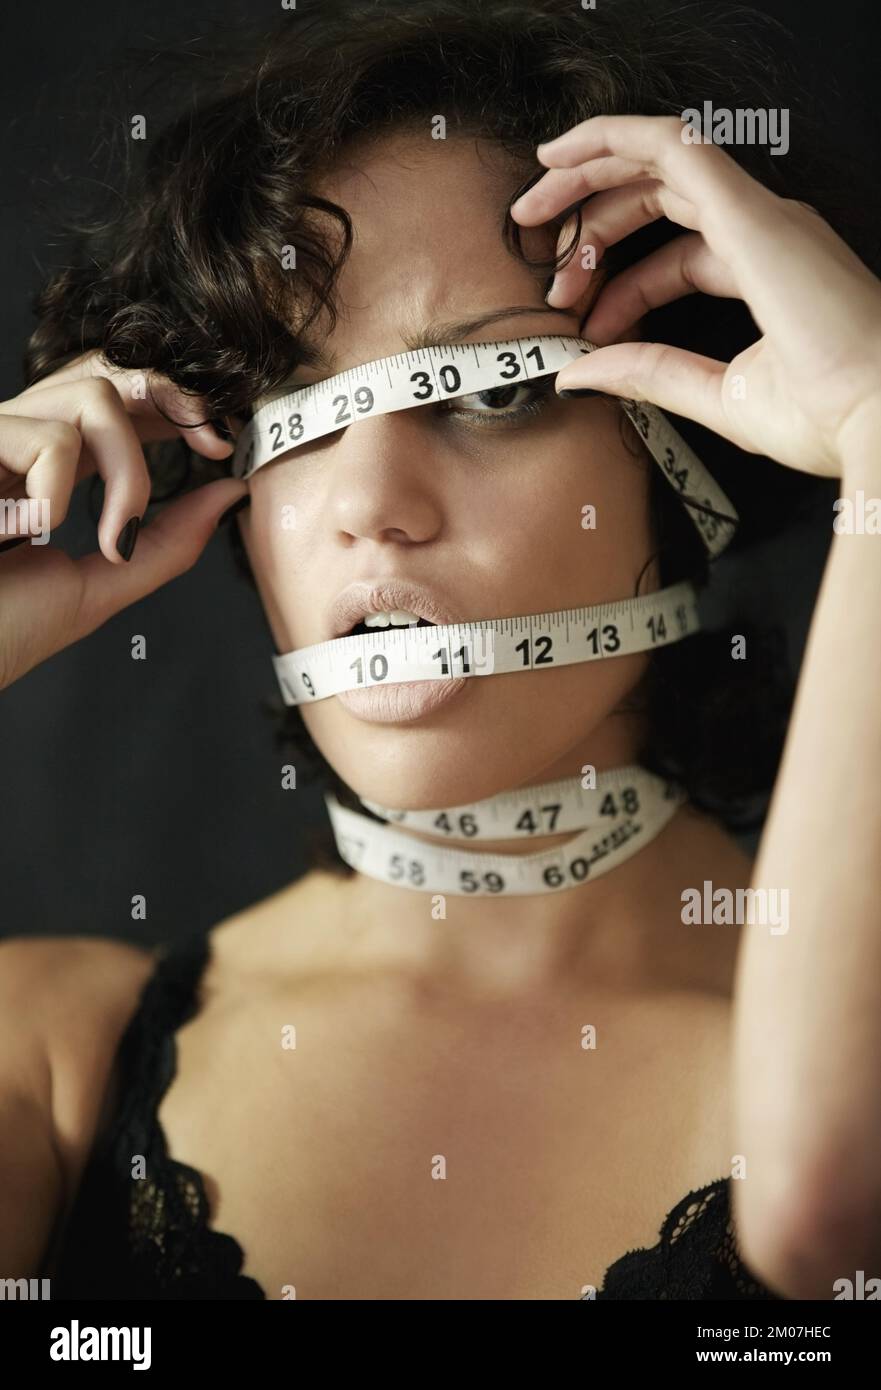 Ossessionato con i pollici perdenti. Concept shot di una donna anoressica con nastro di misurazione avvolto intorno alla testa. Foto Stock